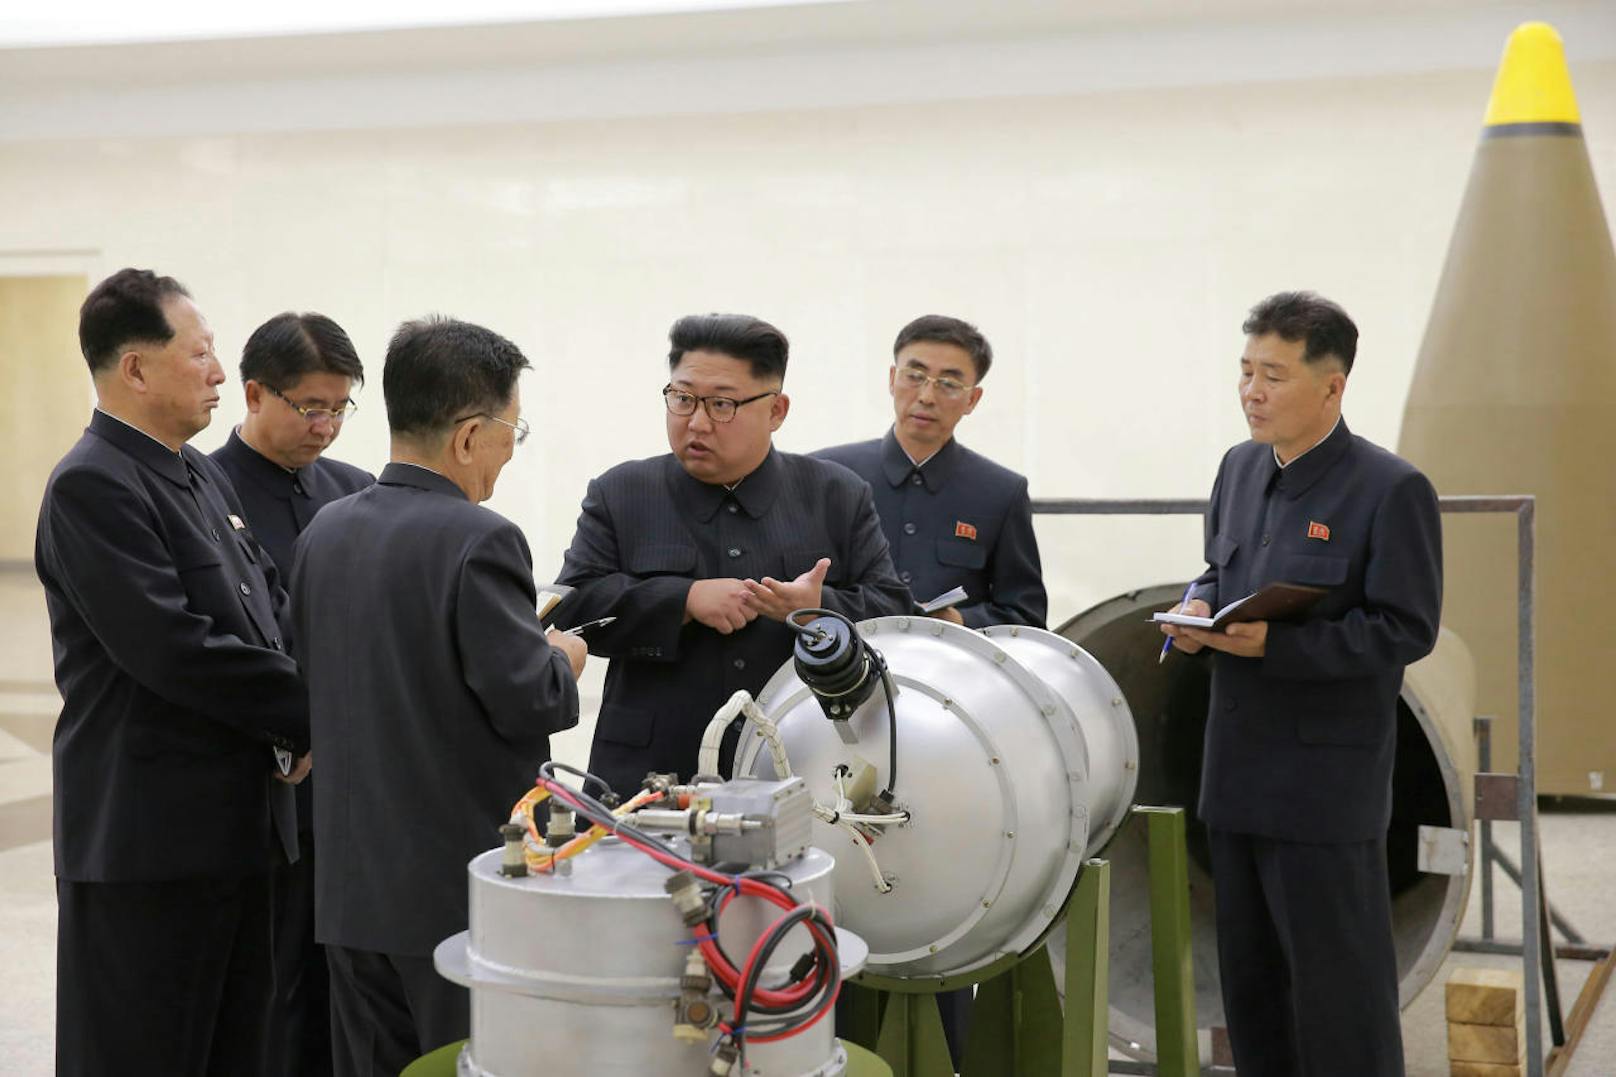 <b>3. Oktober 2017: </b>Unbeirrt von internationalem Druck befahl Diktator <b>Kim Jong-un</b> einen weiteren Atomtest und zündete die bislang <b>stärkste Nuklearwaffe Nordkoreas</b>. Die staatliche Propaganda-Agentur behauptete sogar, dass das Regime eine Wasserstoffbombe getestet hätte. 

<b>Mehr Infos: </b> <a href="https://www.heute.at/welt/news/story/Nordkorea-Atomwaffen-Kim-Jong-un-jagt-naechste-Atombombe-in-die-Luft-54594228" target="_blank">Kim Jong-un jagt nächste Atombombe in die Luft</a>